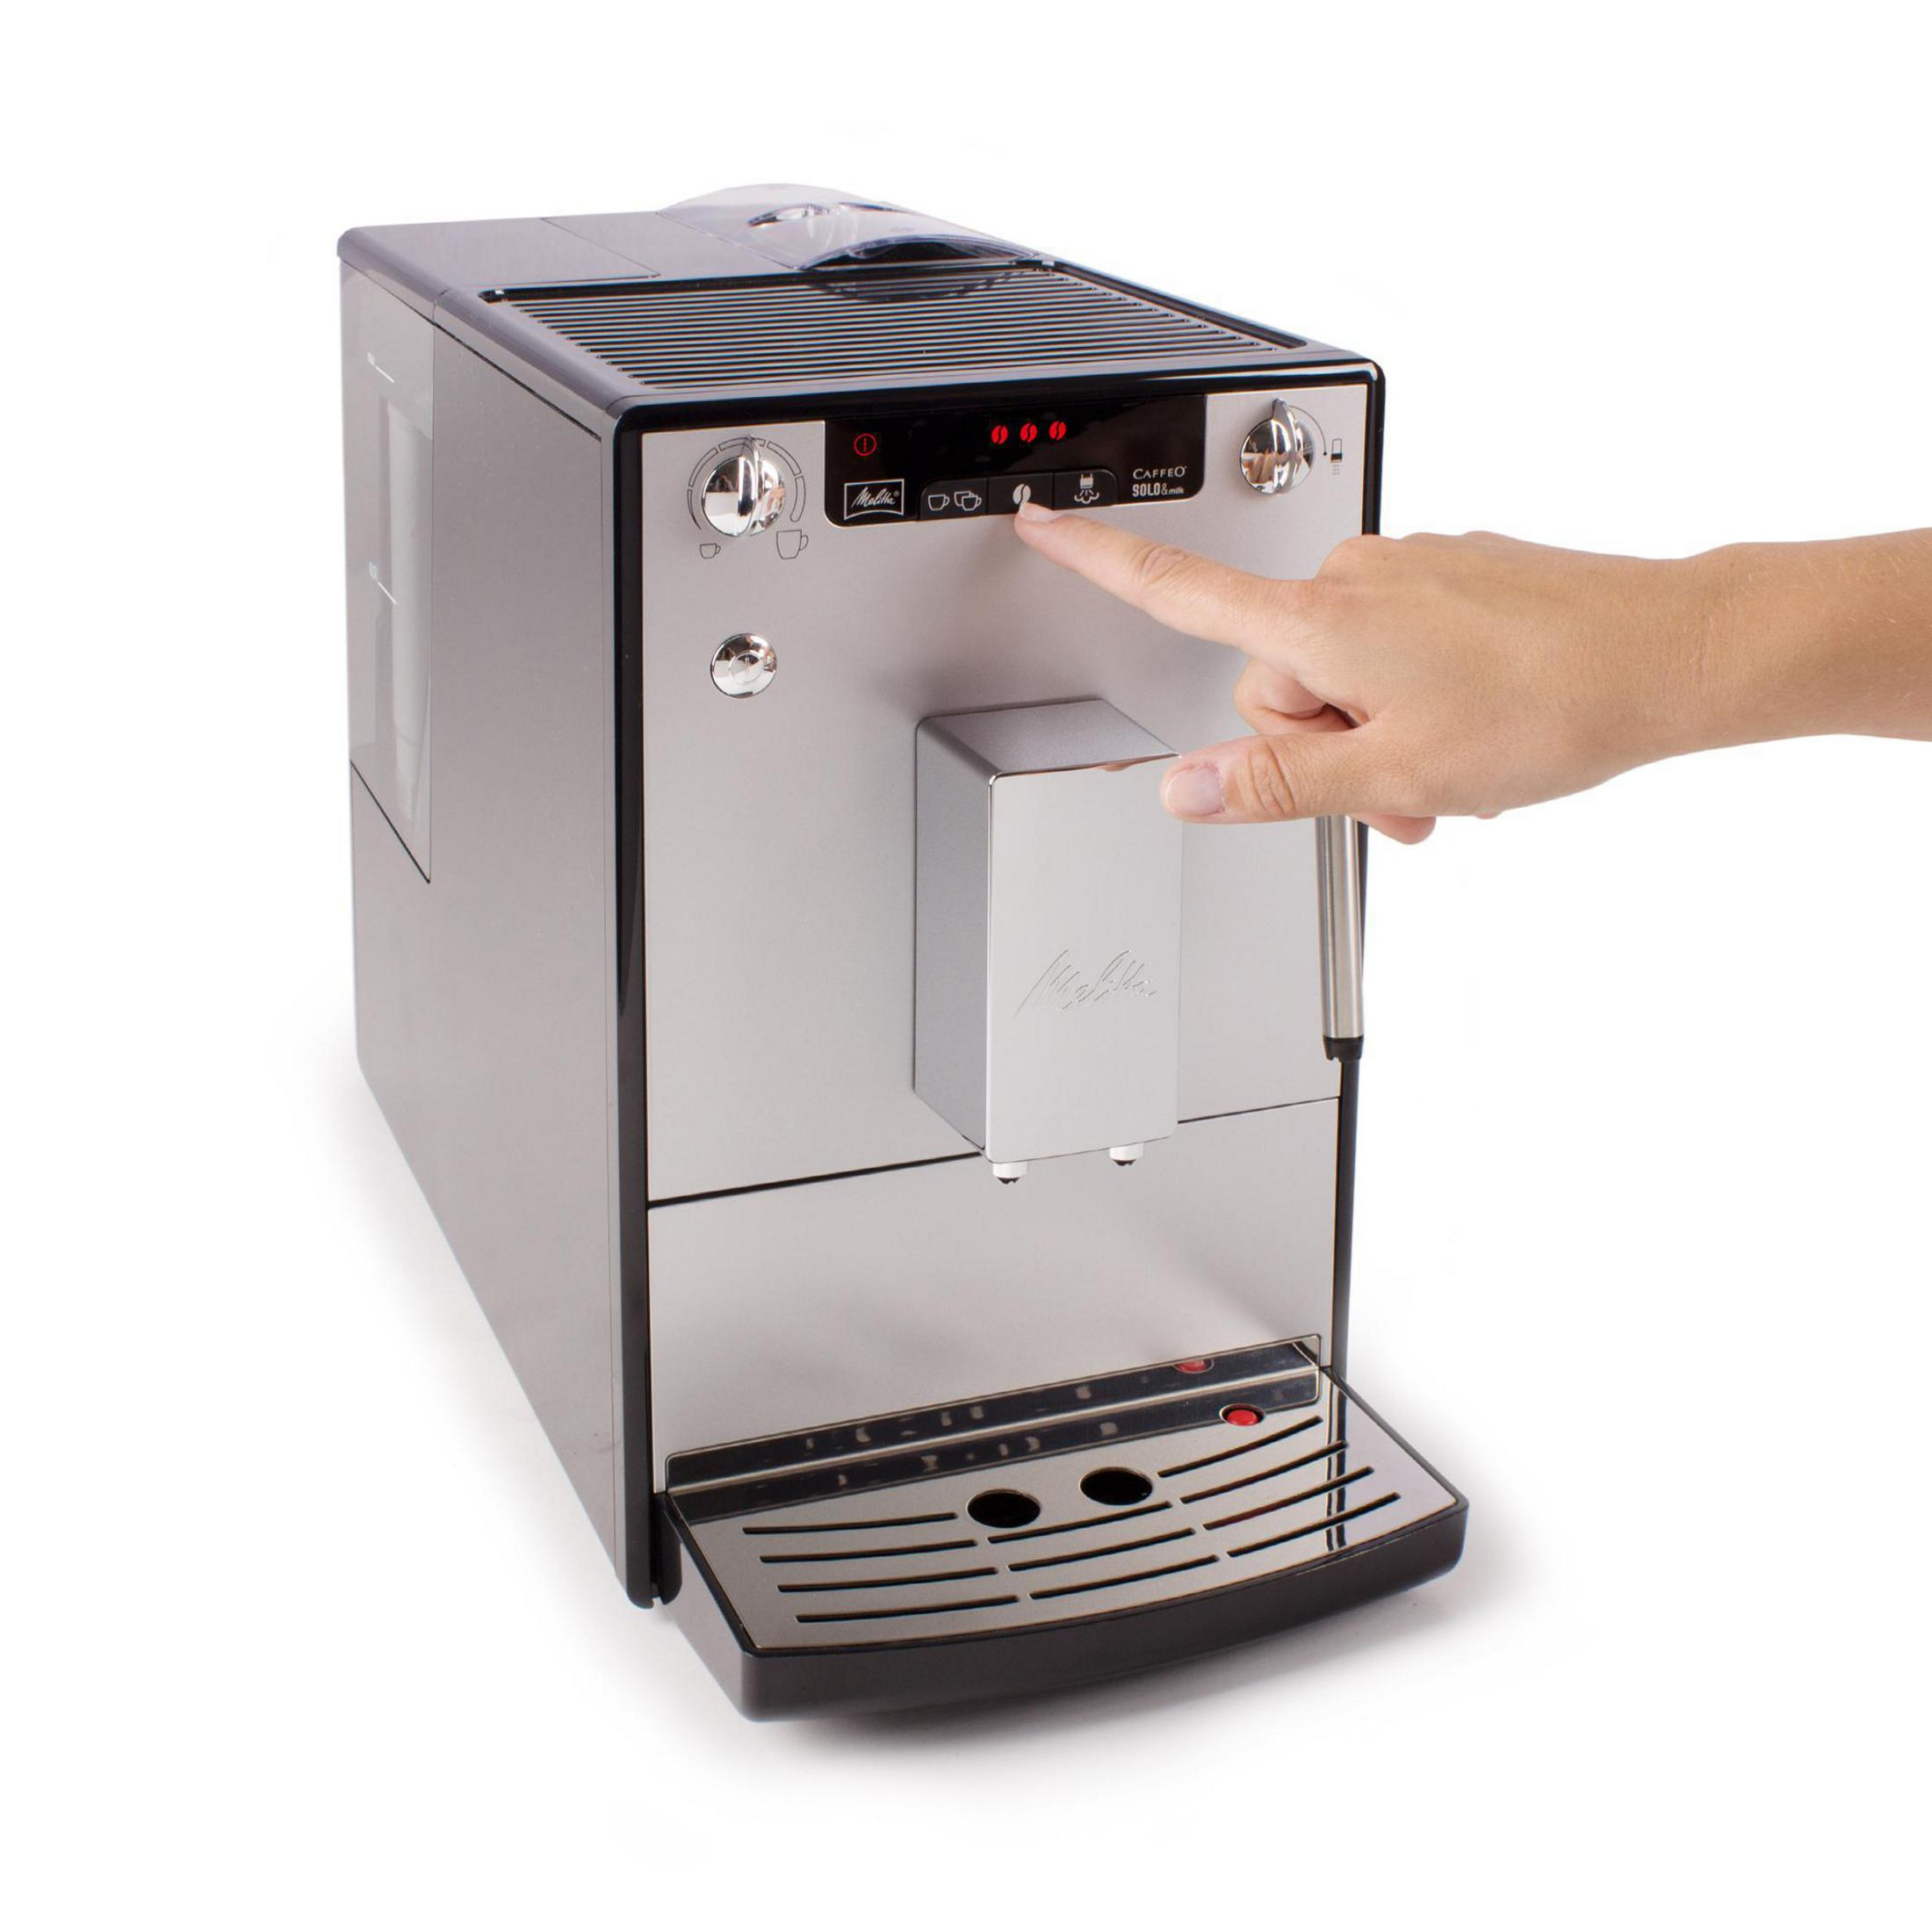 MELITTA E953-202 Kaffeevollautomat Schwarz-silber